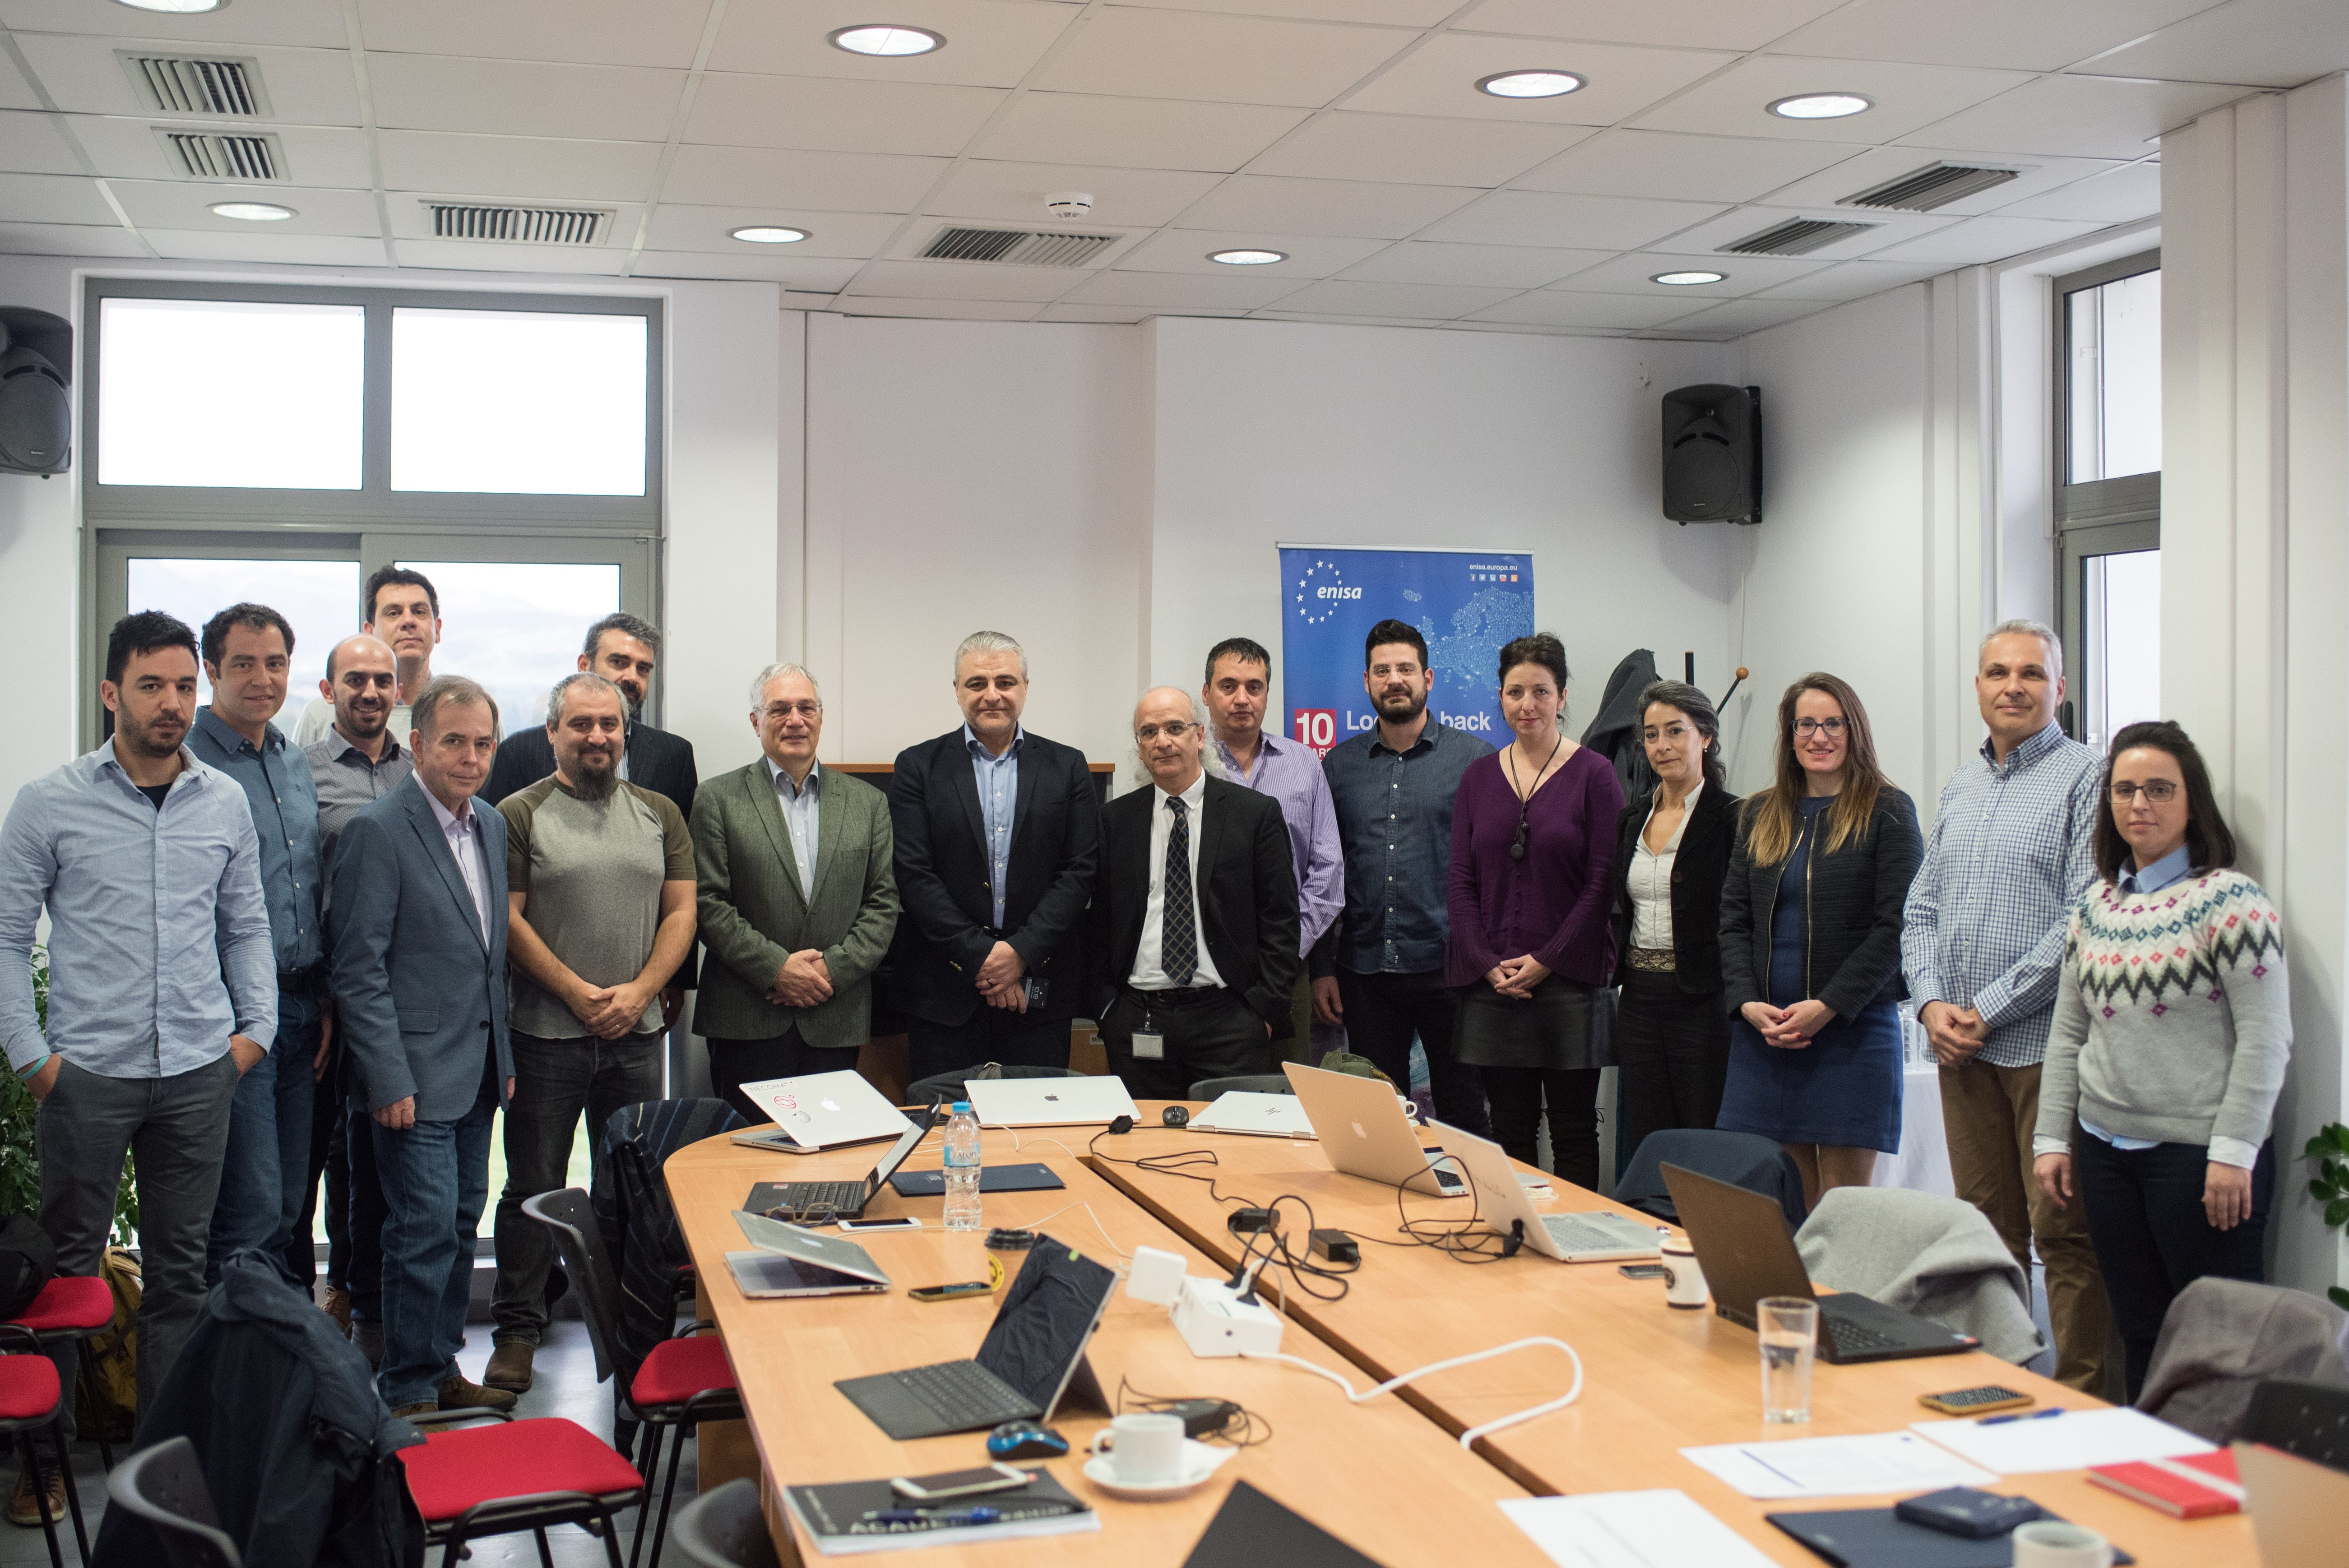 Ηράκλειο: ENISA και ΙΤΕ ενισχύουν τη συνεργασία τους . Στις 31 Ιανουαρίου 2019, ο ΕΝISA υποδέχτηκε μια ομάδα εκπροσώπων ....